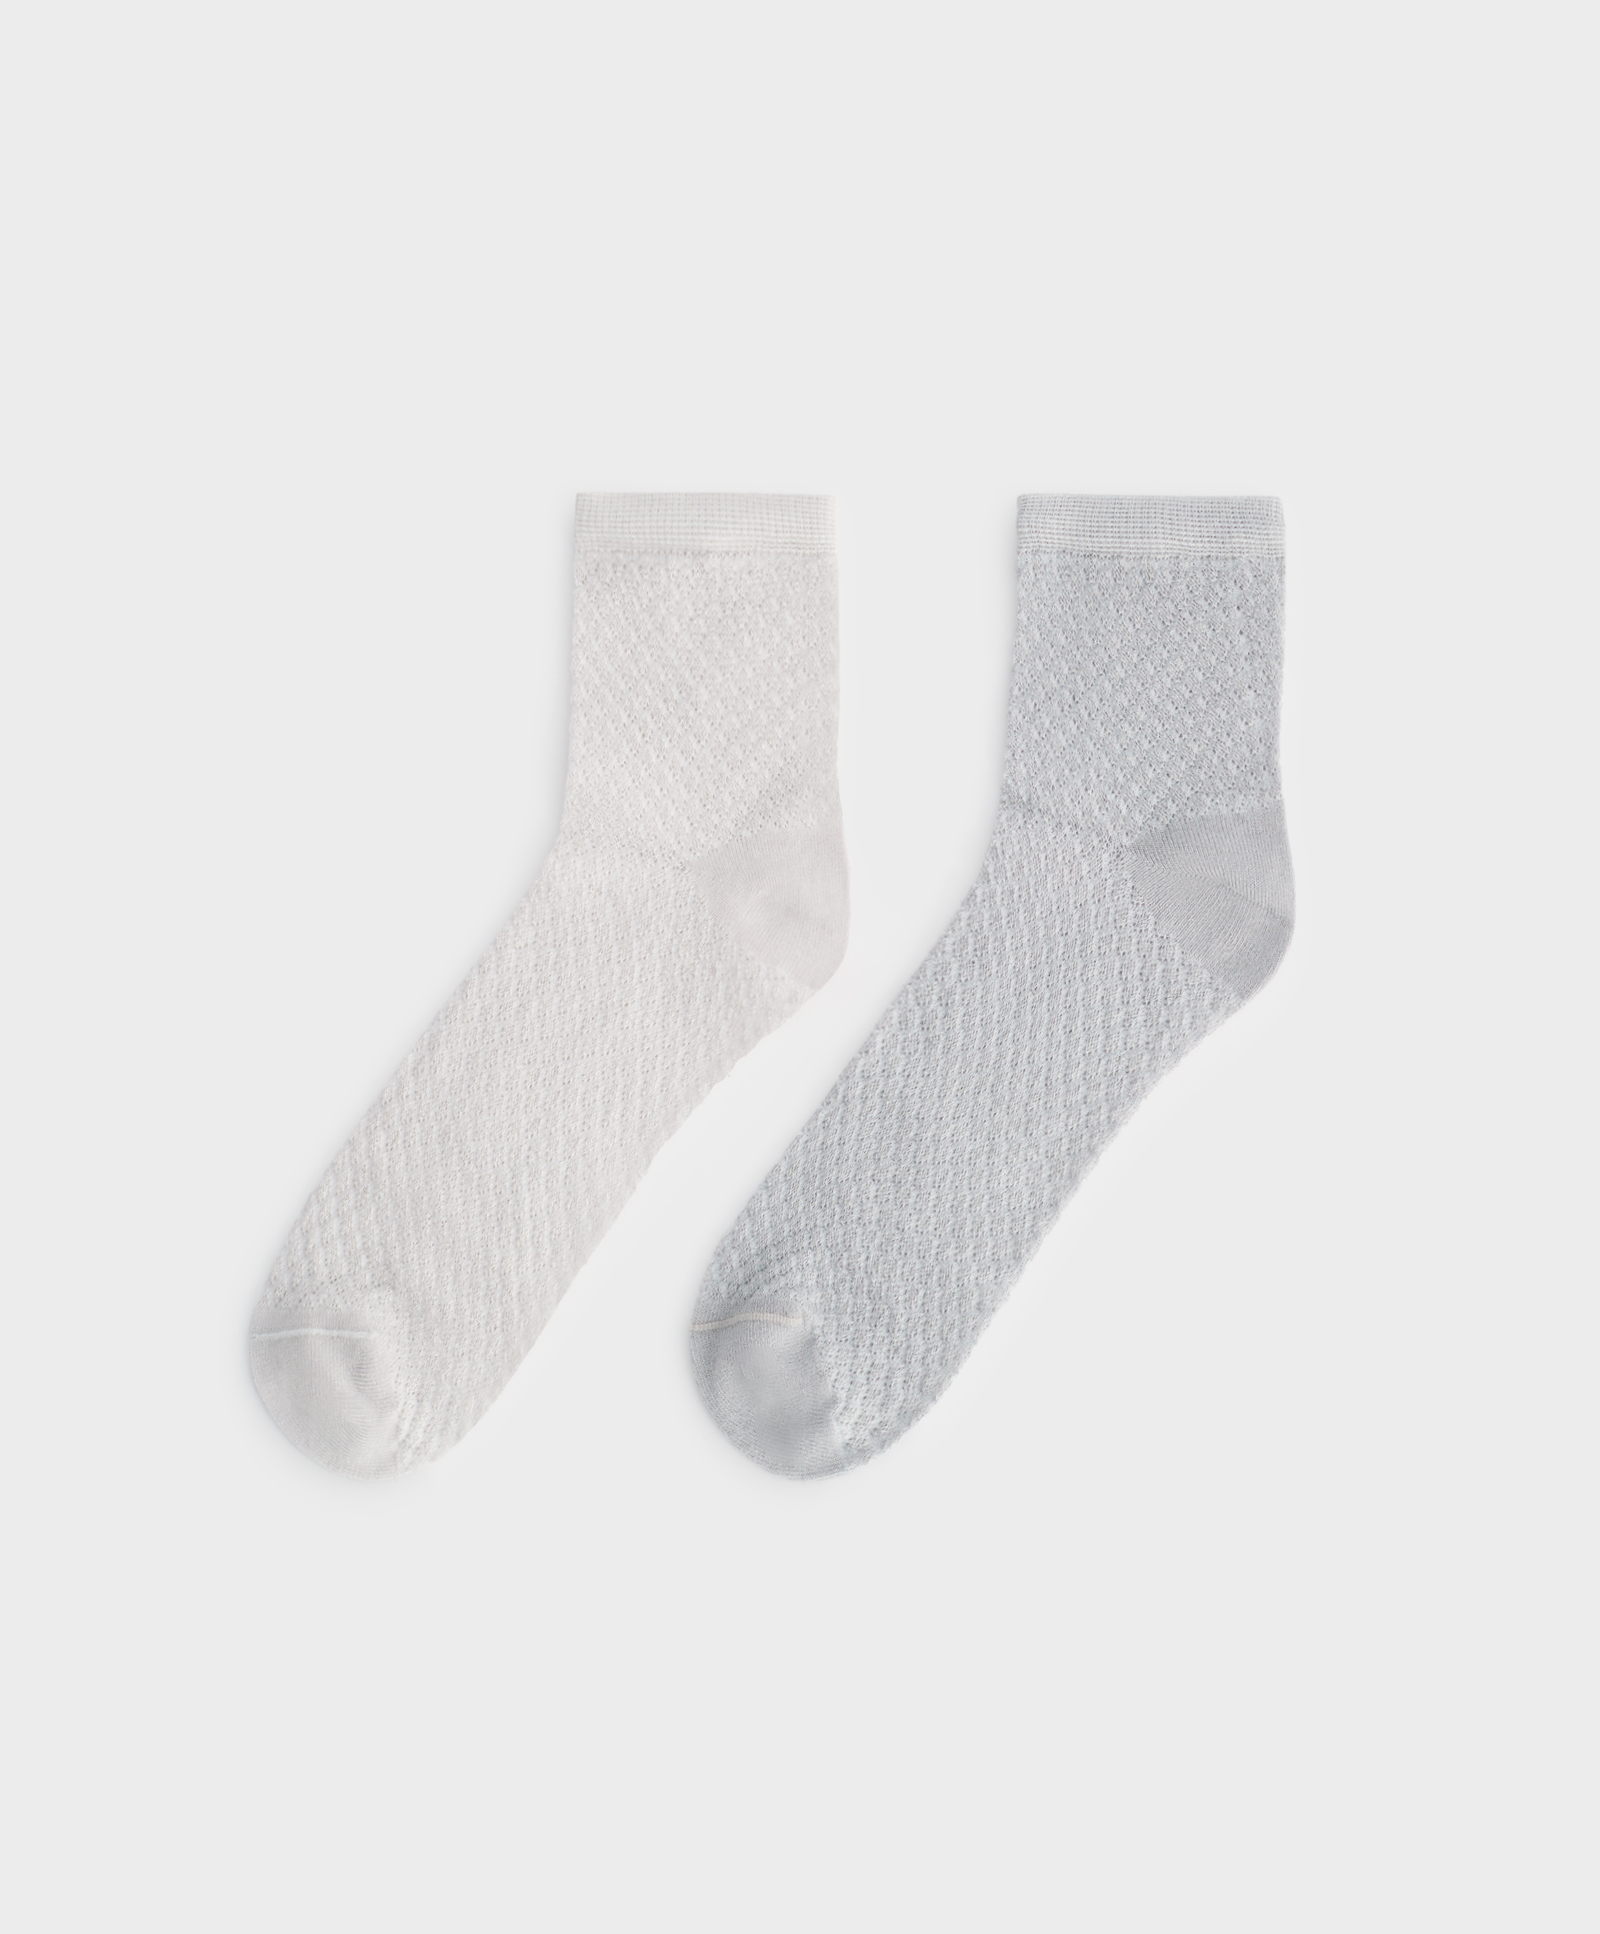 2 paar quarter sokken van modal met perforatiedetails